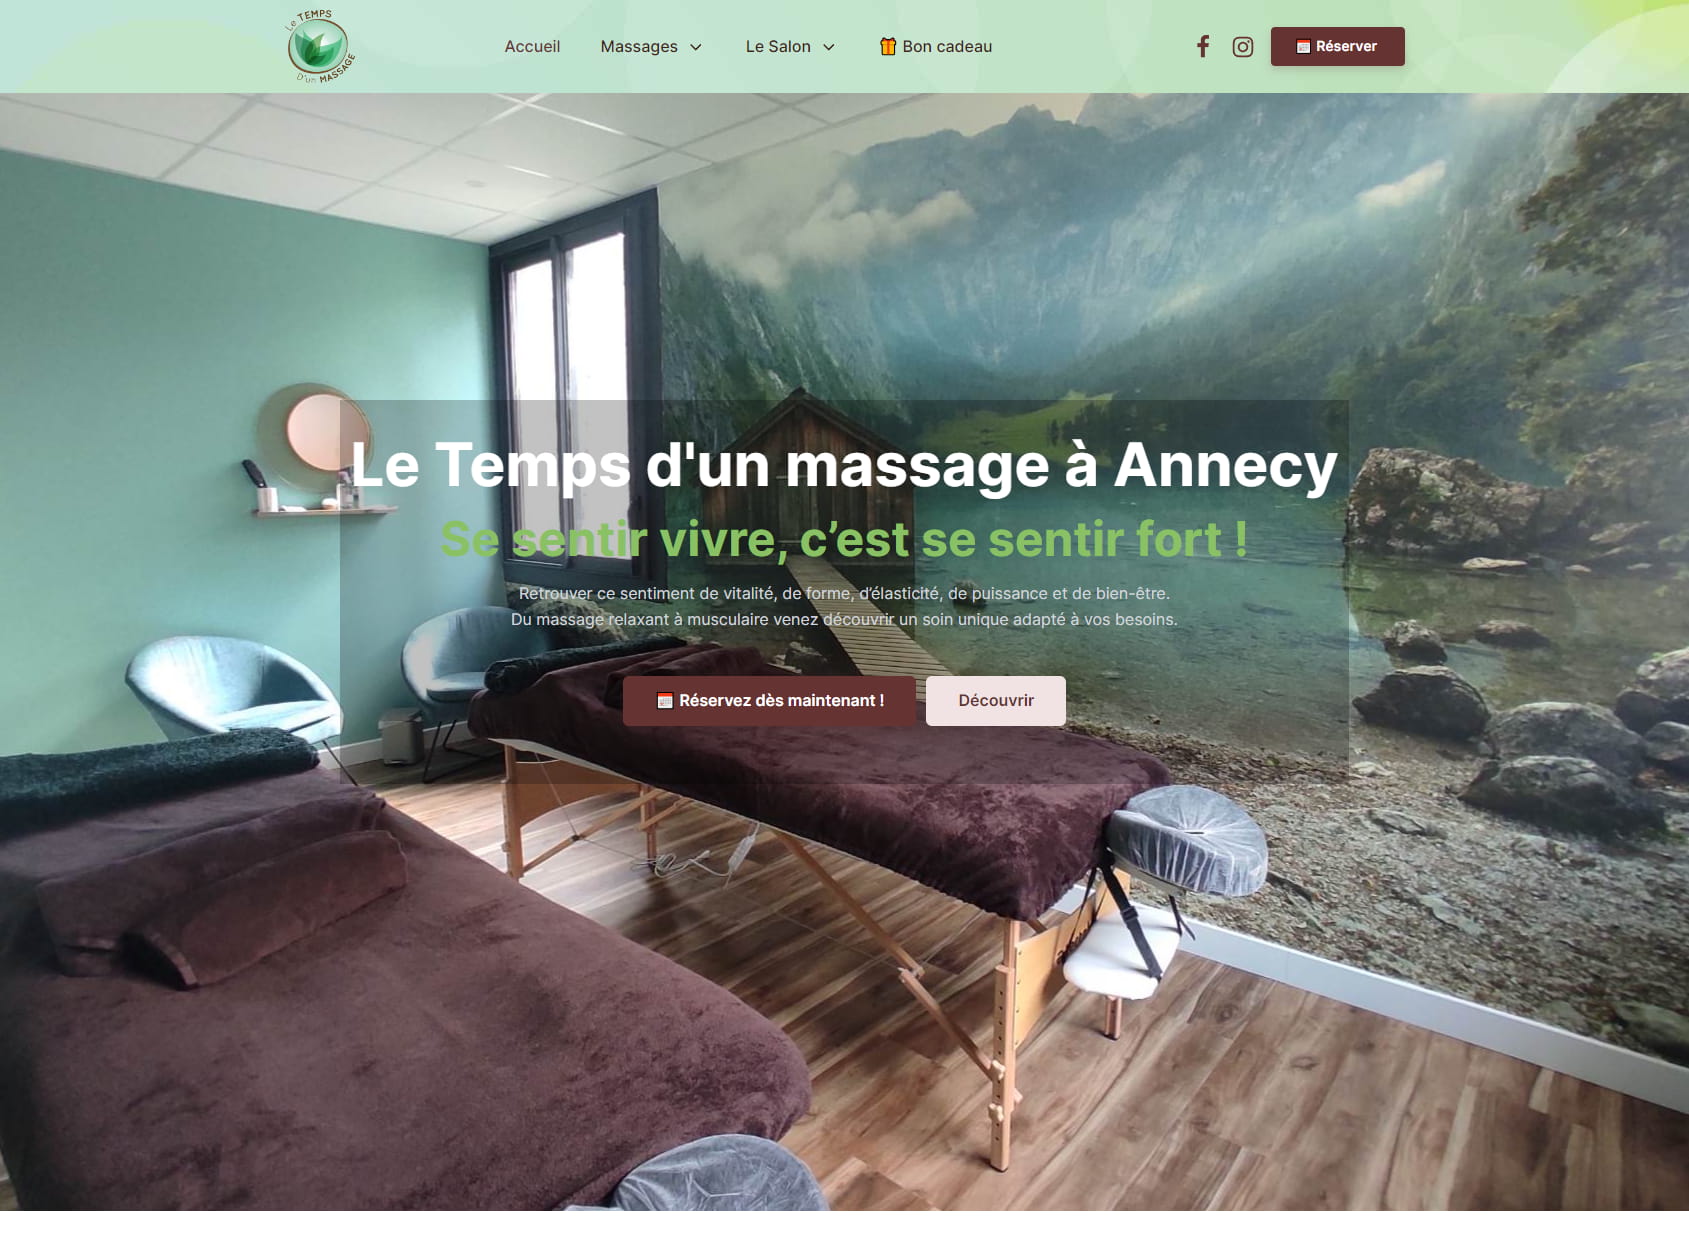 Le temps d'un massage Annecy